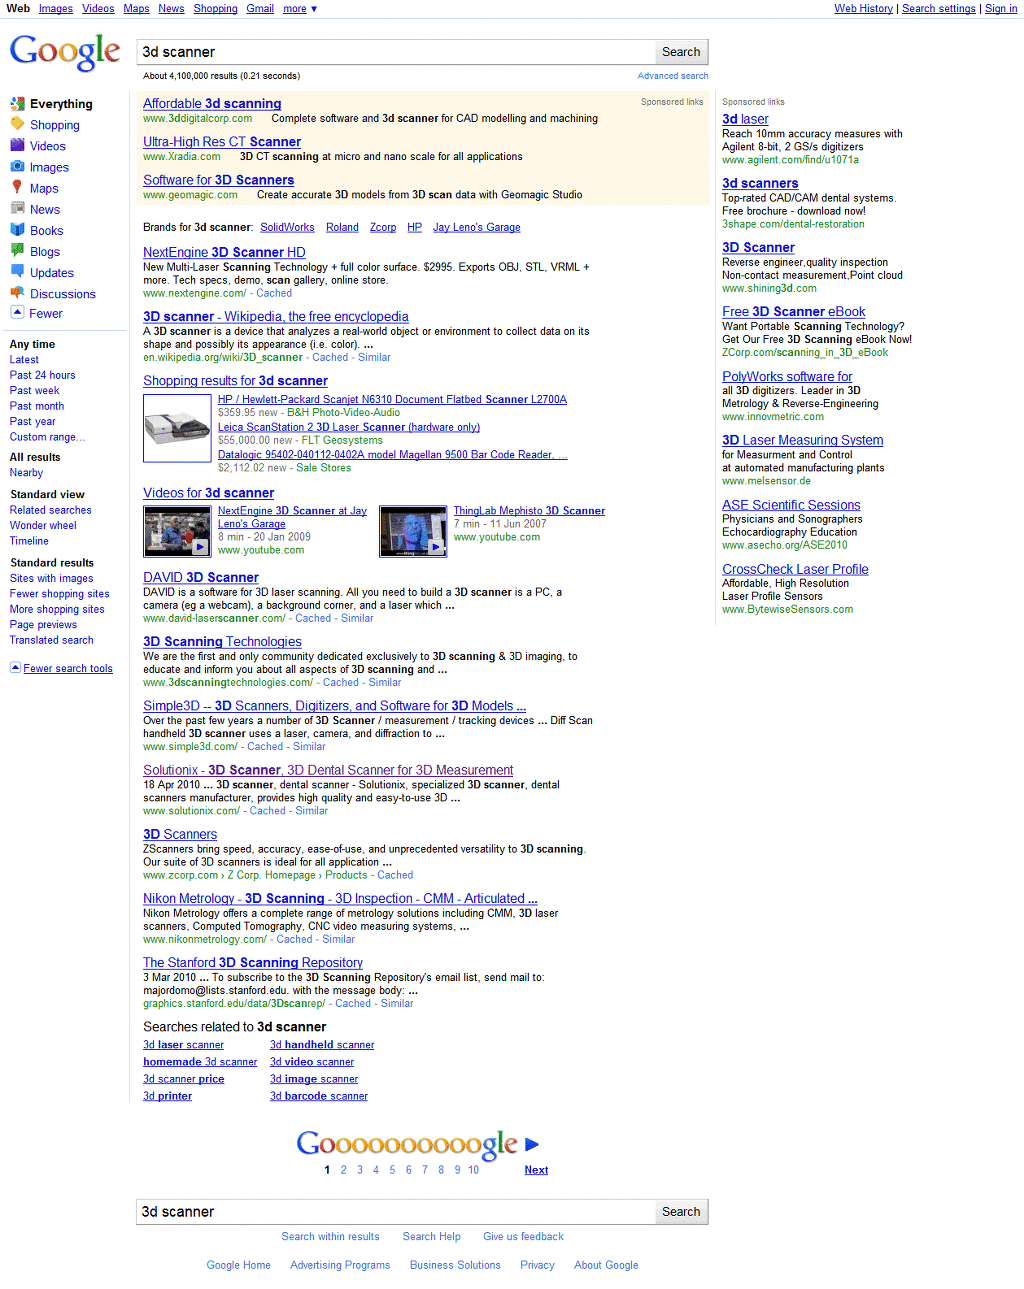 변경된 구글의 검색결과 페이지